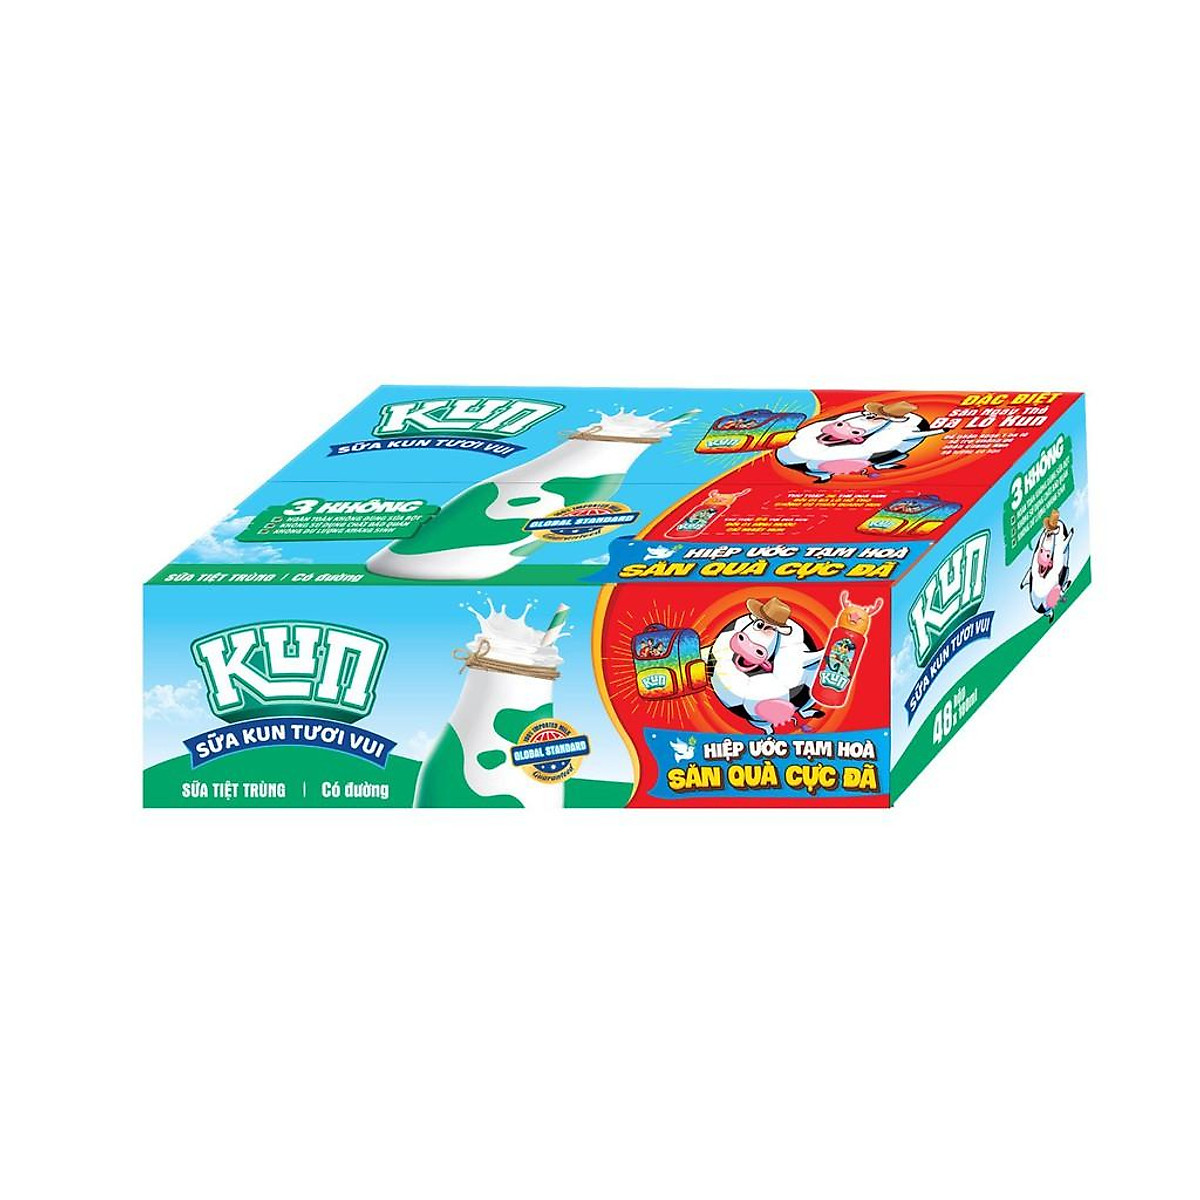 Sữa Kun tươi vui đường thùng 48 hộp: Bạn muốn cung cấp dinh dưỡng và sự vui vẻ cho bạn lành của mình? Hãy chọn Sữa Kun tươi vui đường thùng 48 hộp - một đợt chất lượng, dung tích và hương vị.